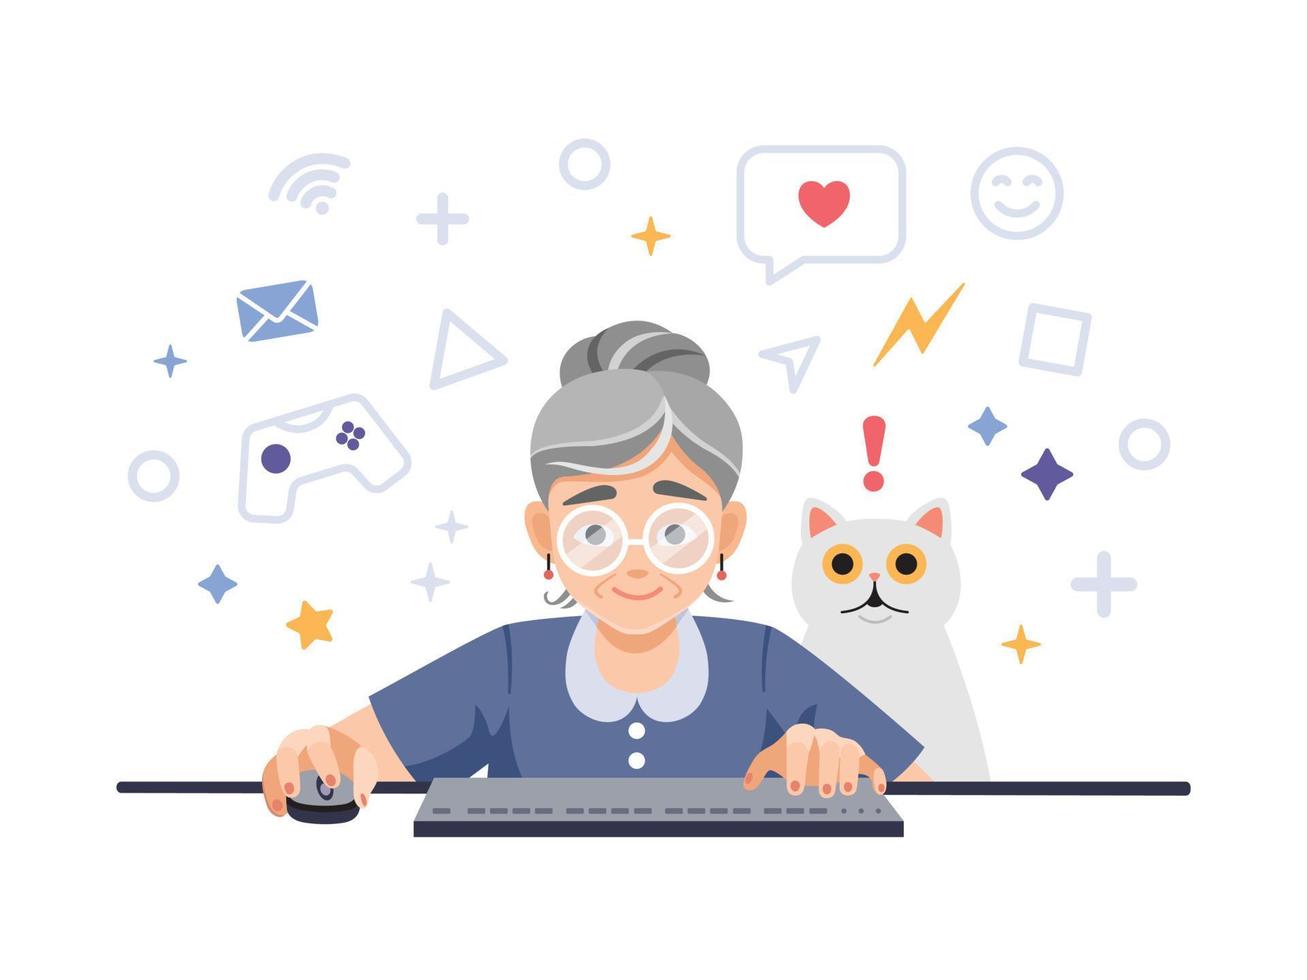 una feliz y emocionada anciana, jubilada, abuela está jugando videojuegos en la computadora, laptop con una mascota sorprendida, gato. Ilustración de vector plano colorido lindo, postal de dibujos animados.